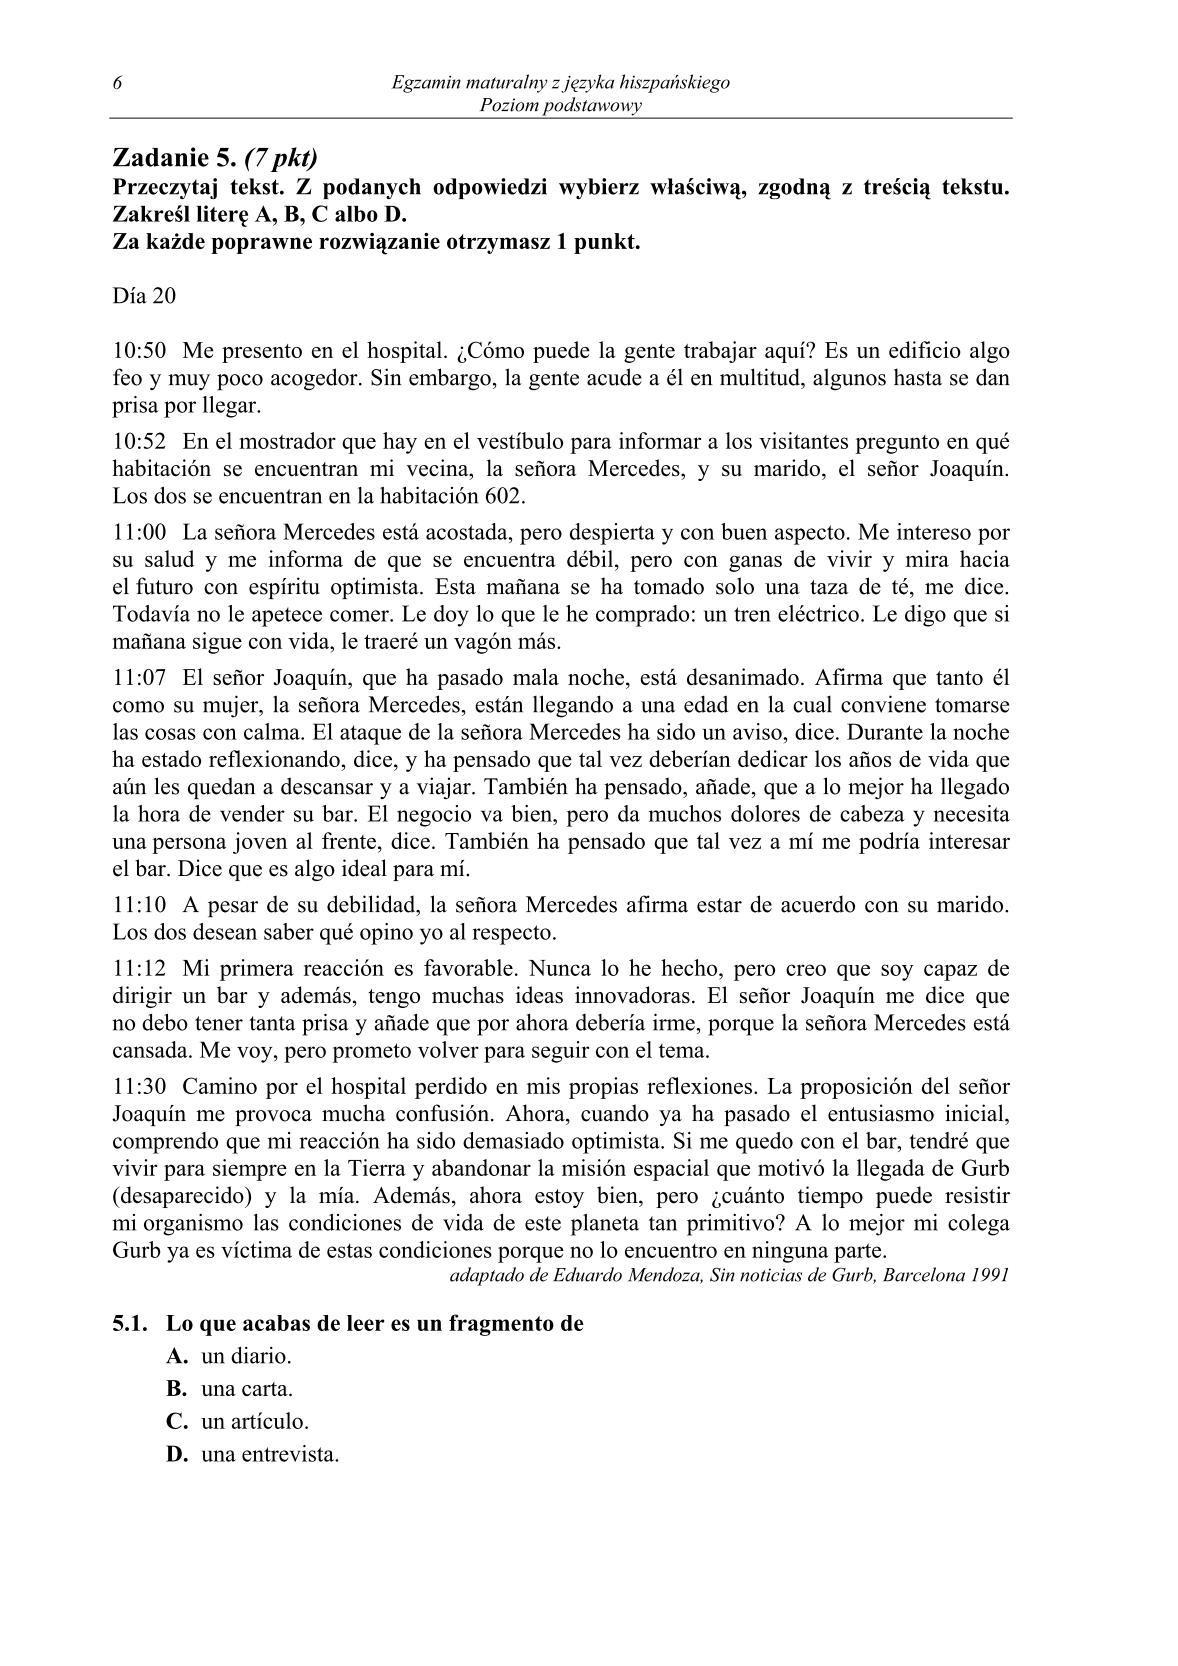 pytania-hiszpanski-poziom-podstawowy-matura-2014-str.6